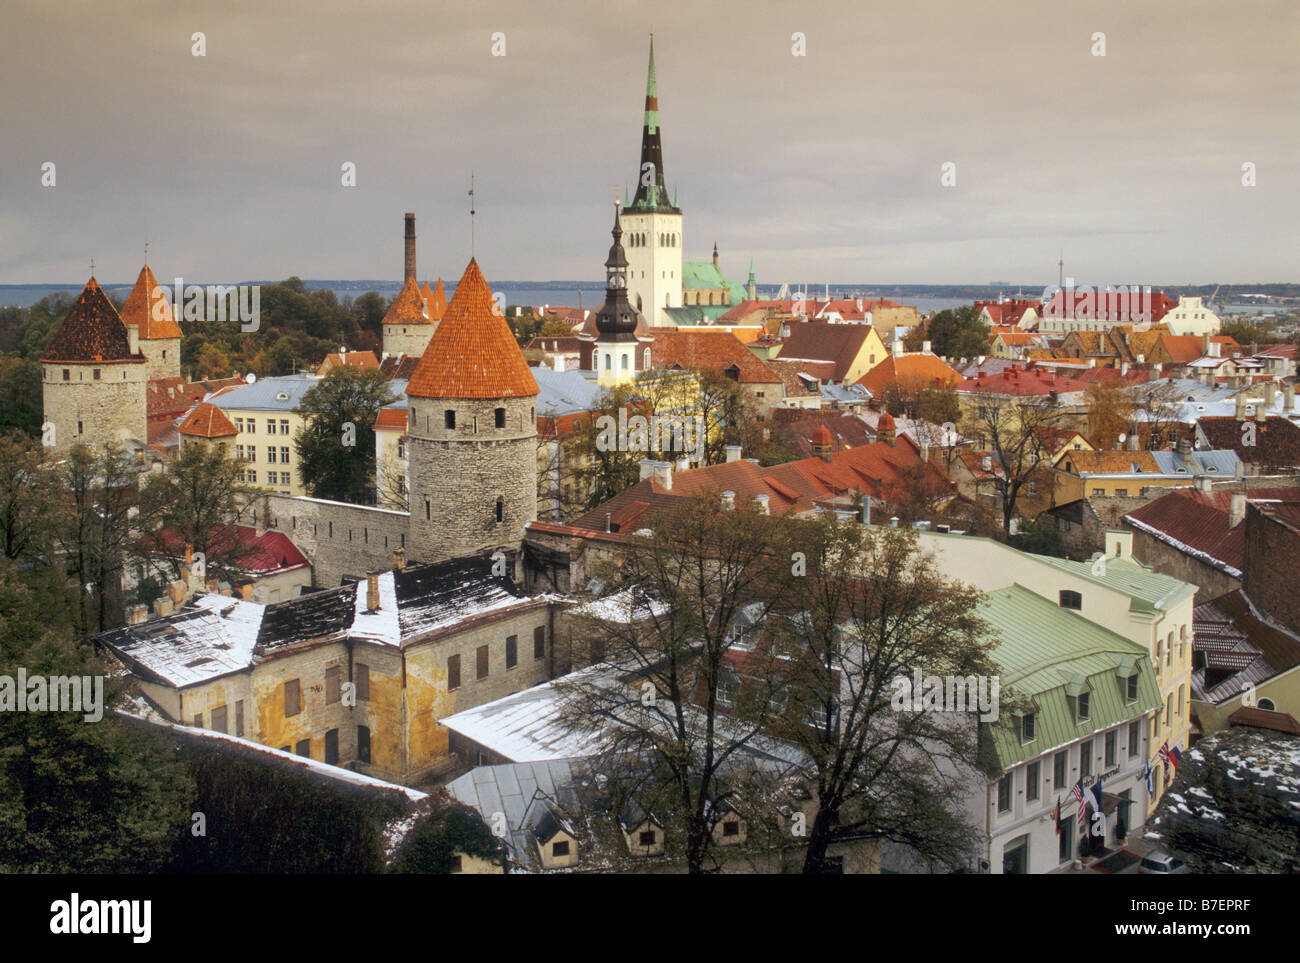 La partie basse de la ville de Tallin Estonie avec la neige précoce vu du haut de la ville avec la tour de l'église St Olaf dans le centre Banque D'Images